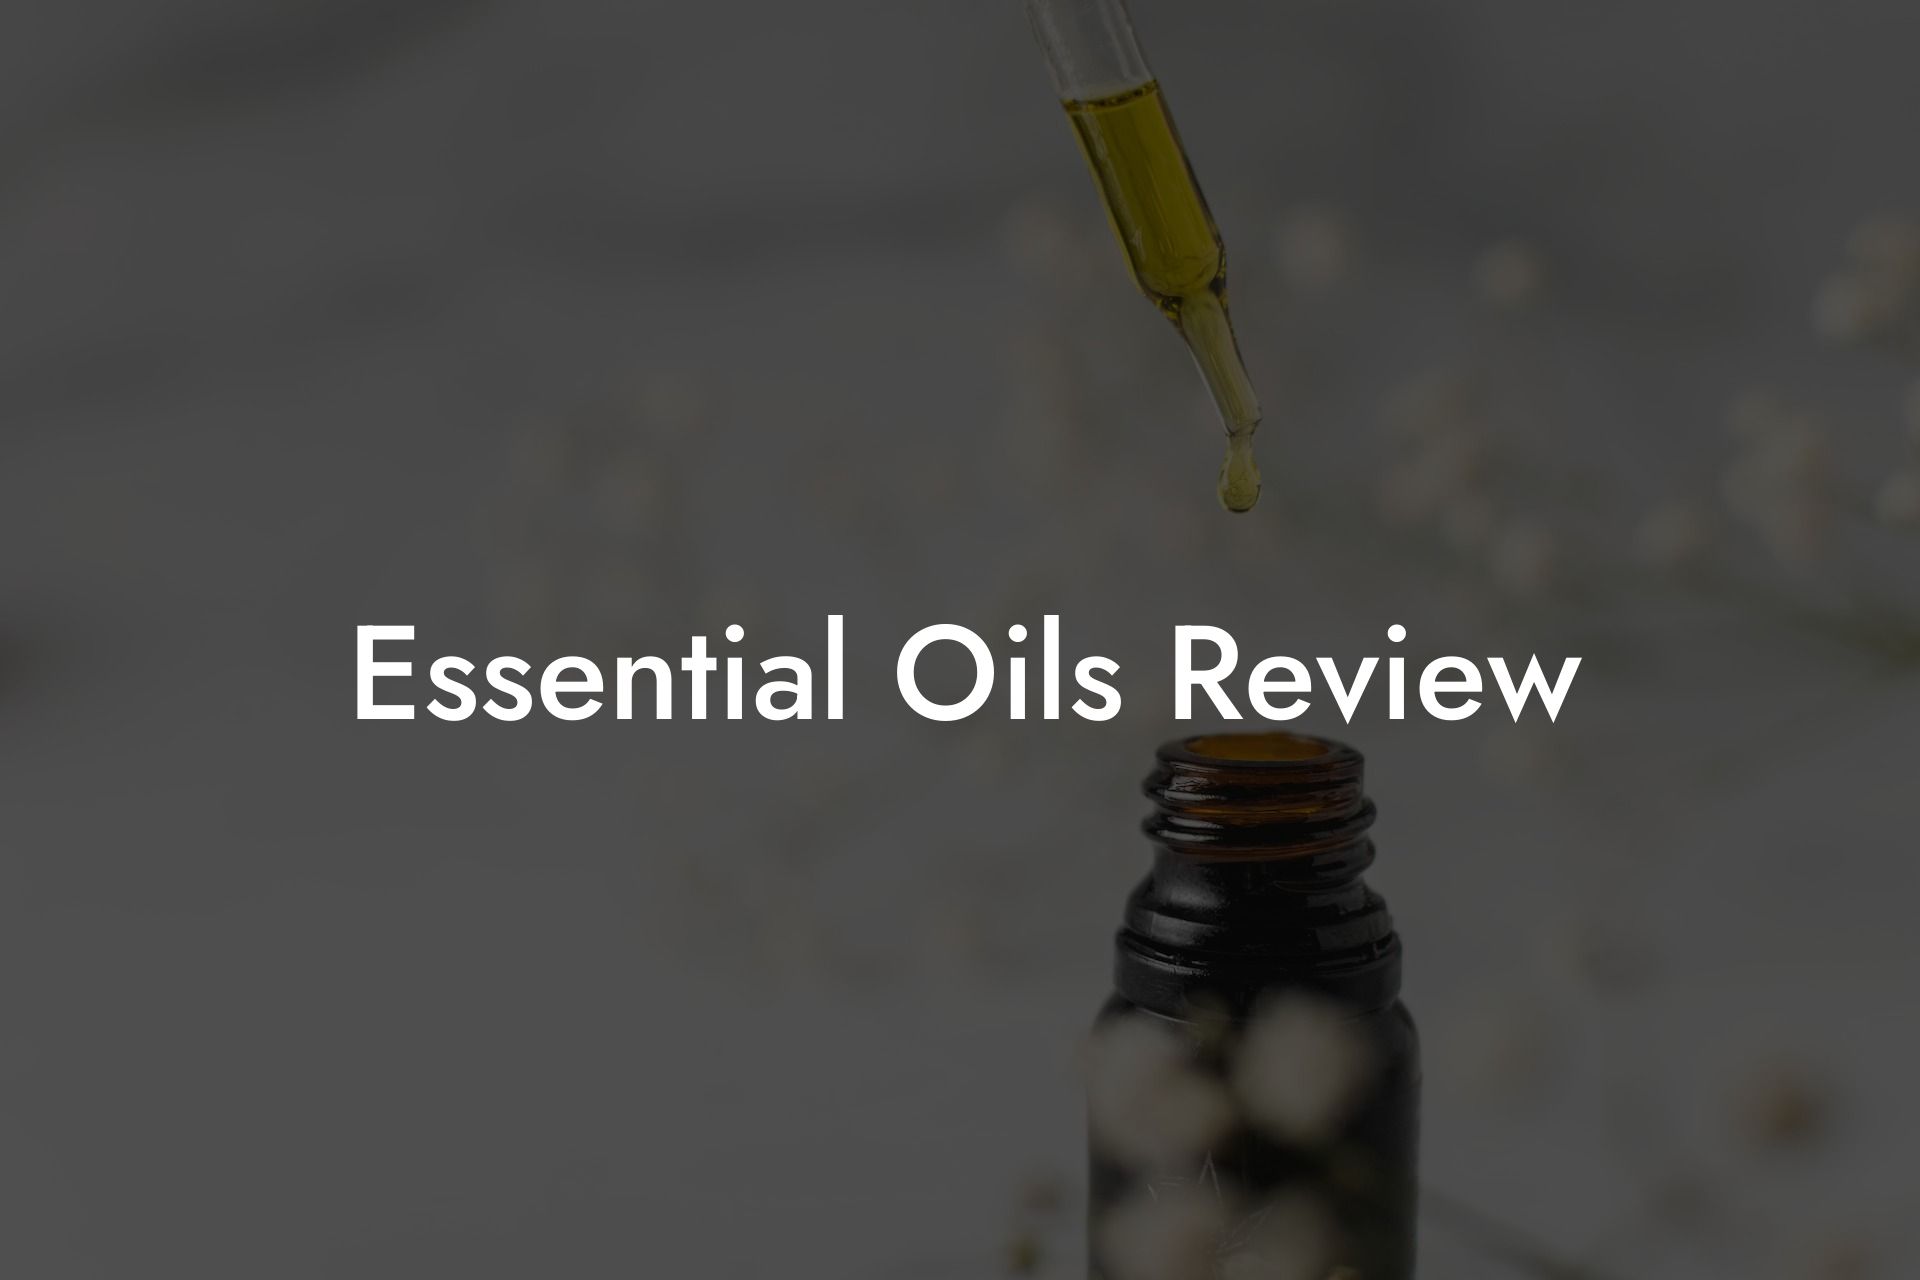 Essential Oils Review